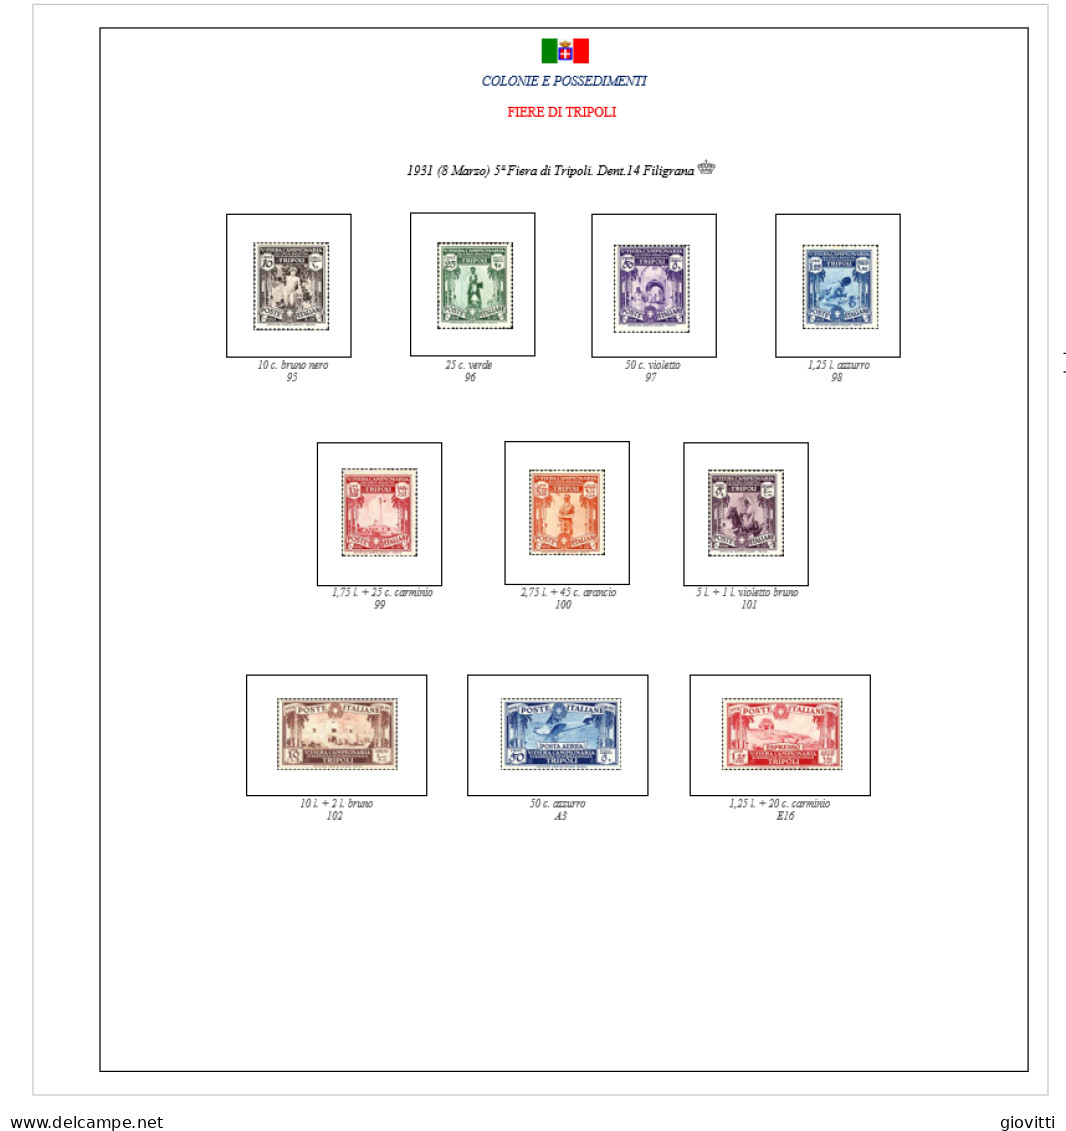 FIERE DI TRIPOLI GIRO COMPLETO, Fogli Per Album Autocostruiti. - Stamp Boxes